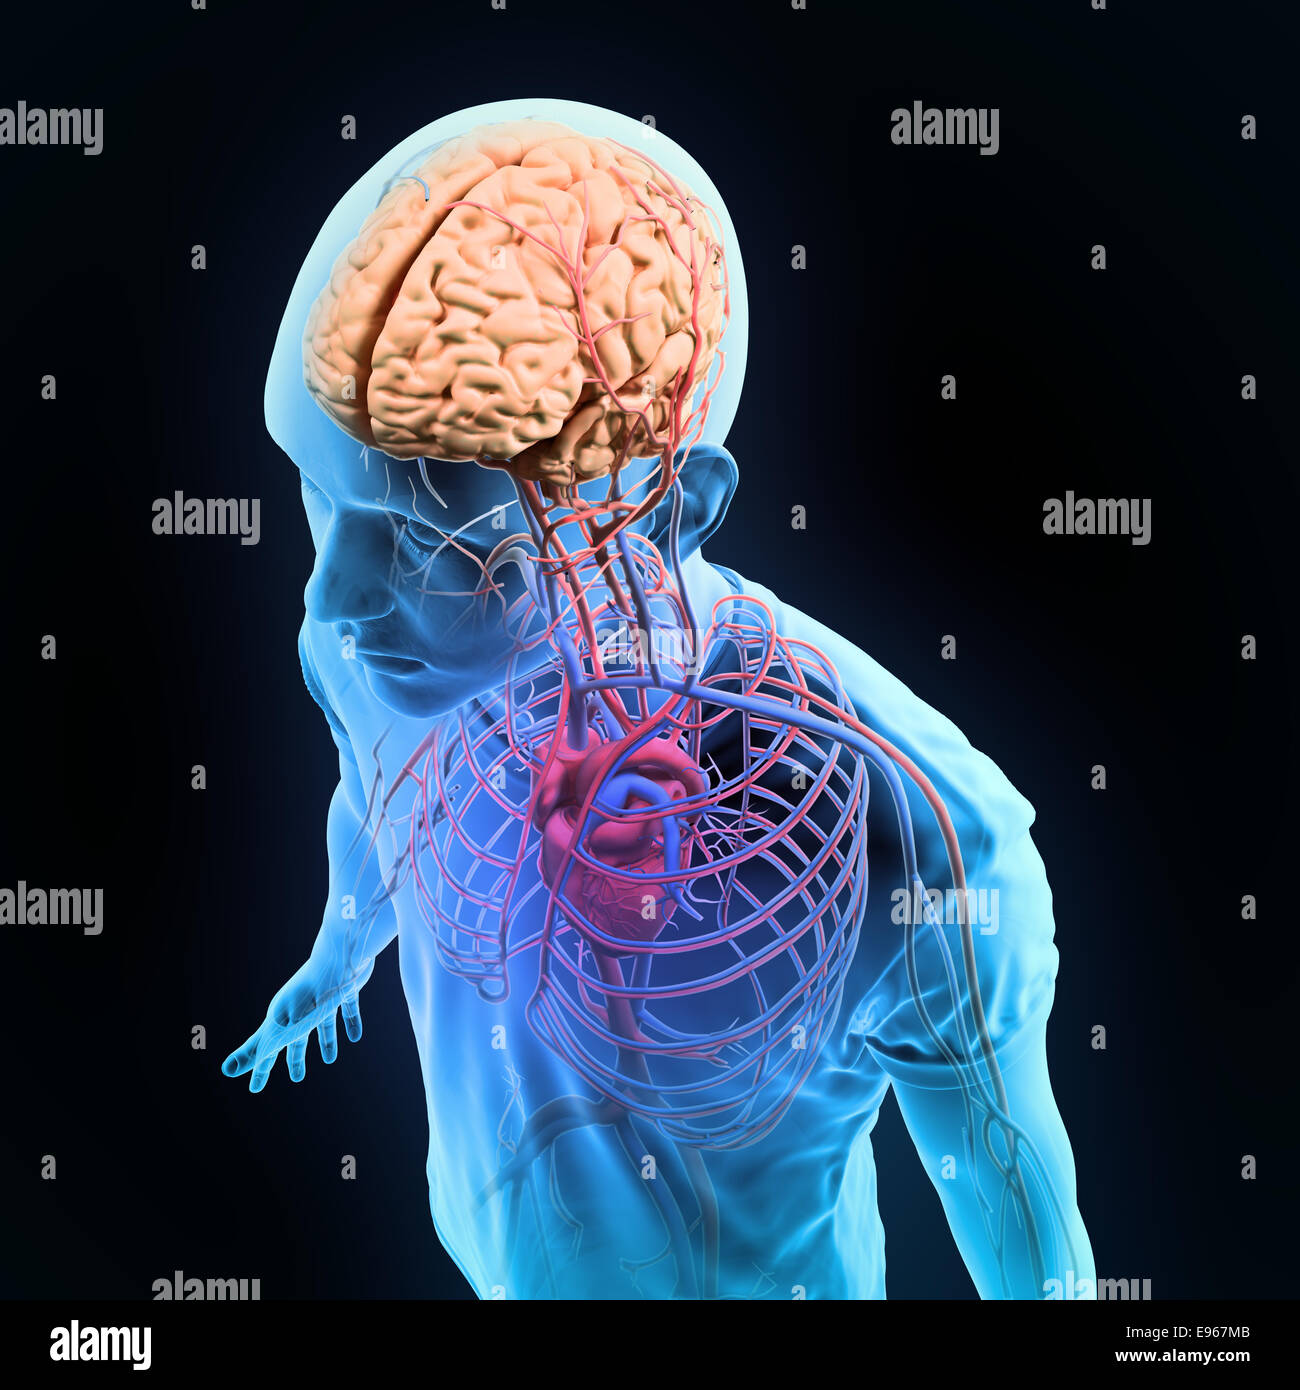 Anatomia umana - Illustrazione del sistema nervoso centrale e i sistemi circolatorio Foto Stock